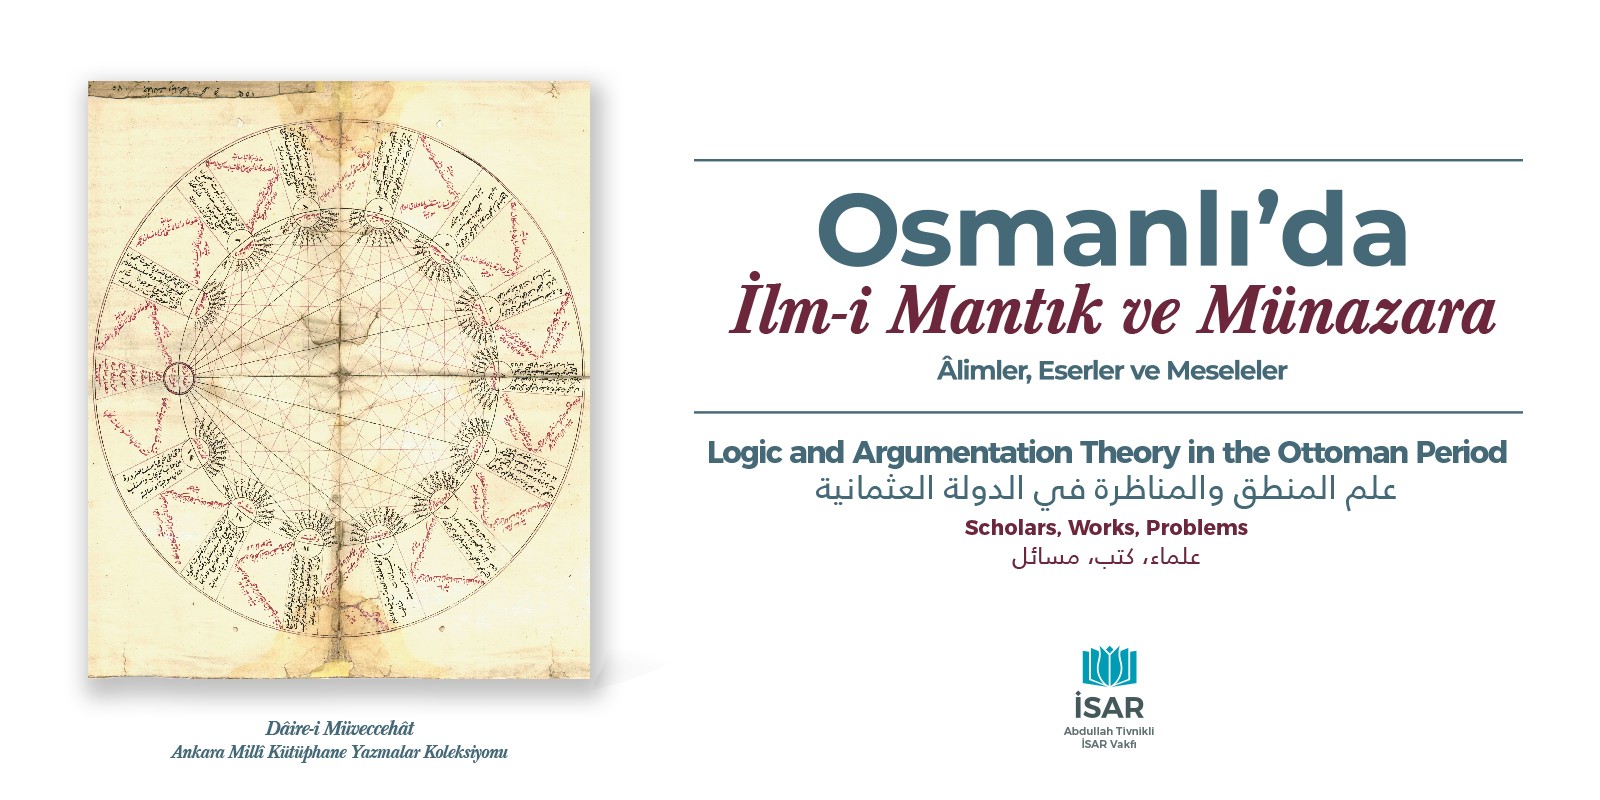 Osmanlı'da İlm-i Mantık ve Münazara Sempozyumu Gerçekleştirildi